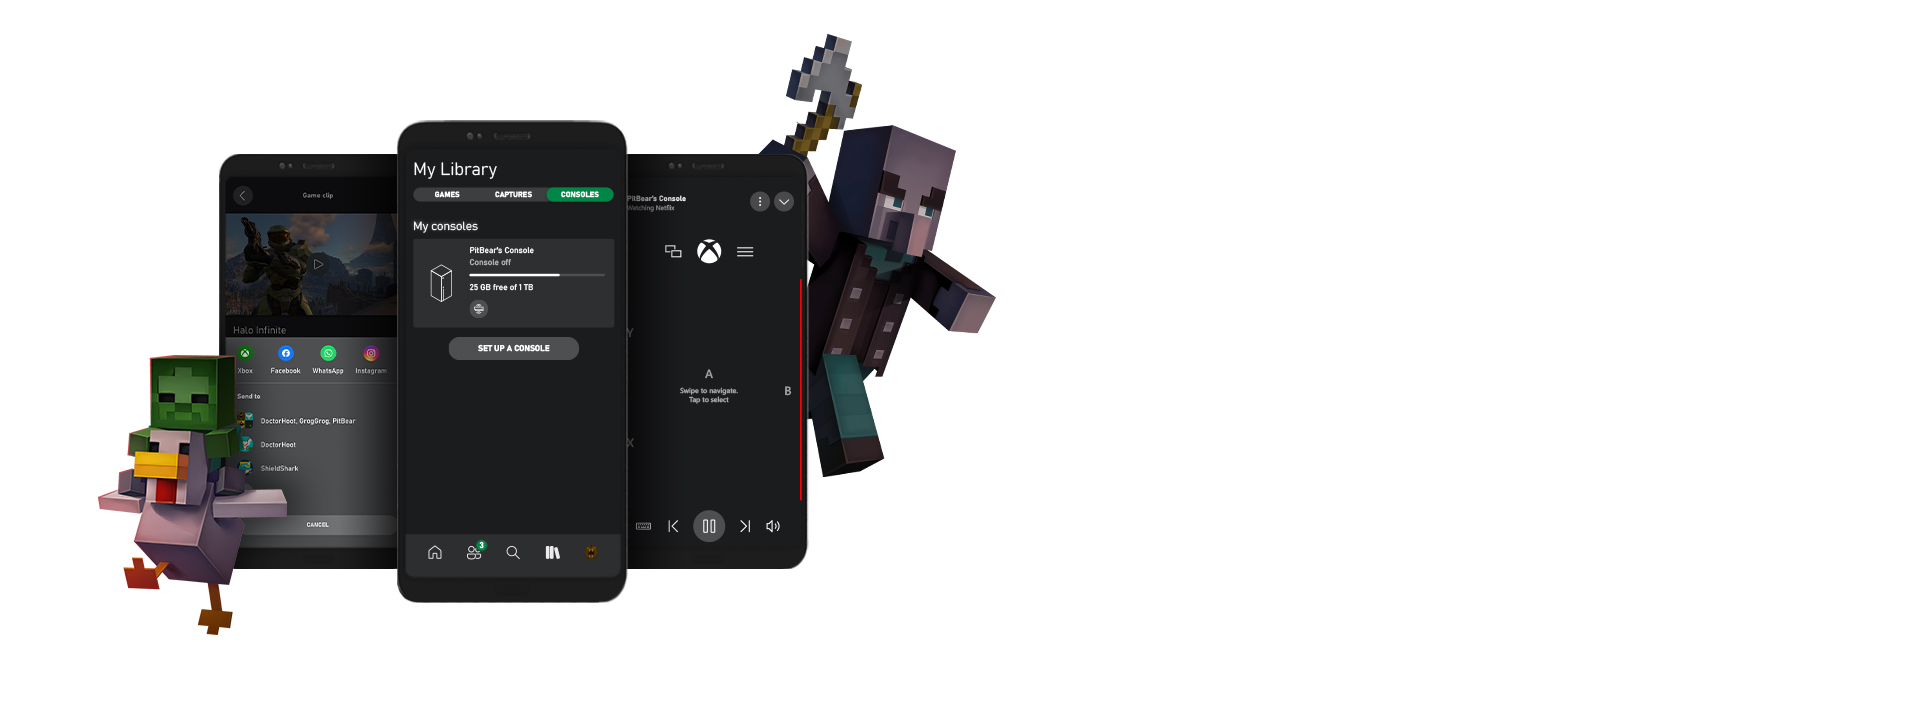 Mobil için Xbox uygulaması kullanıcı arabirimi ekran görüntülerini çevreleyen Minecraft karakterleri.